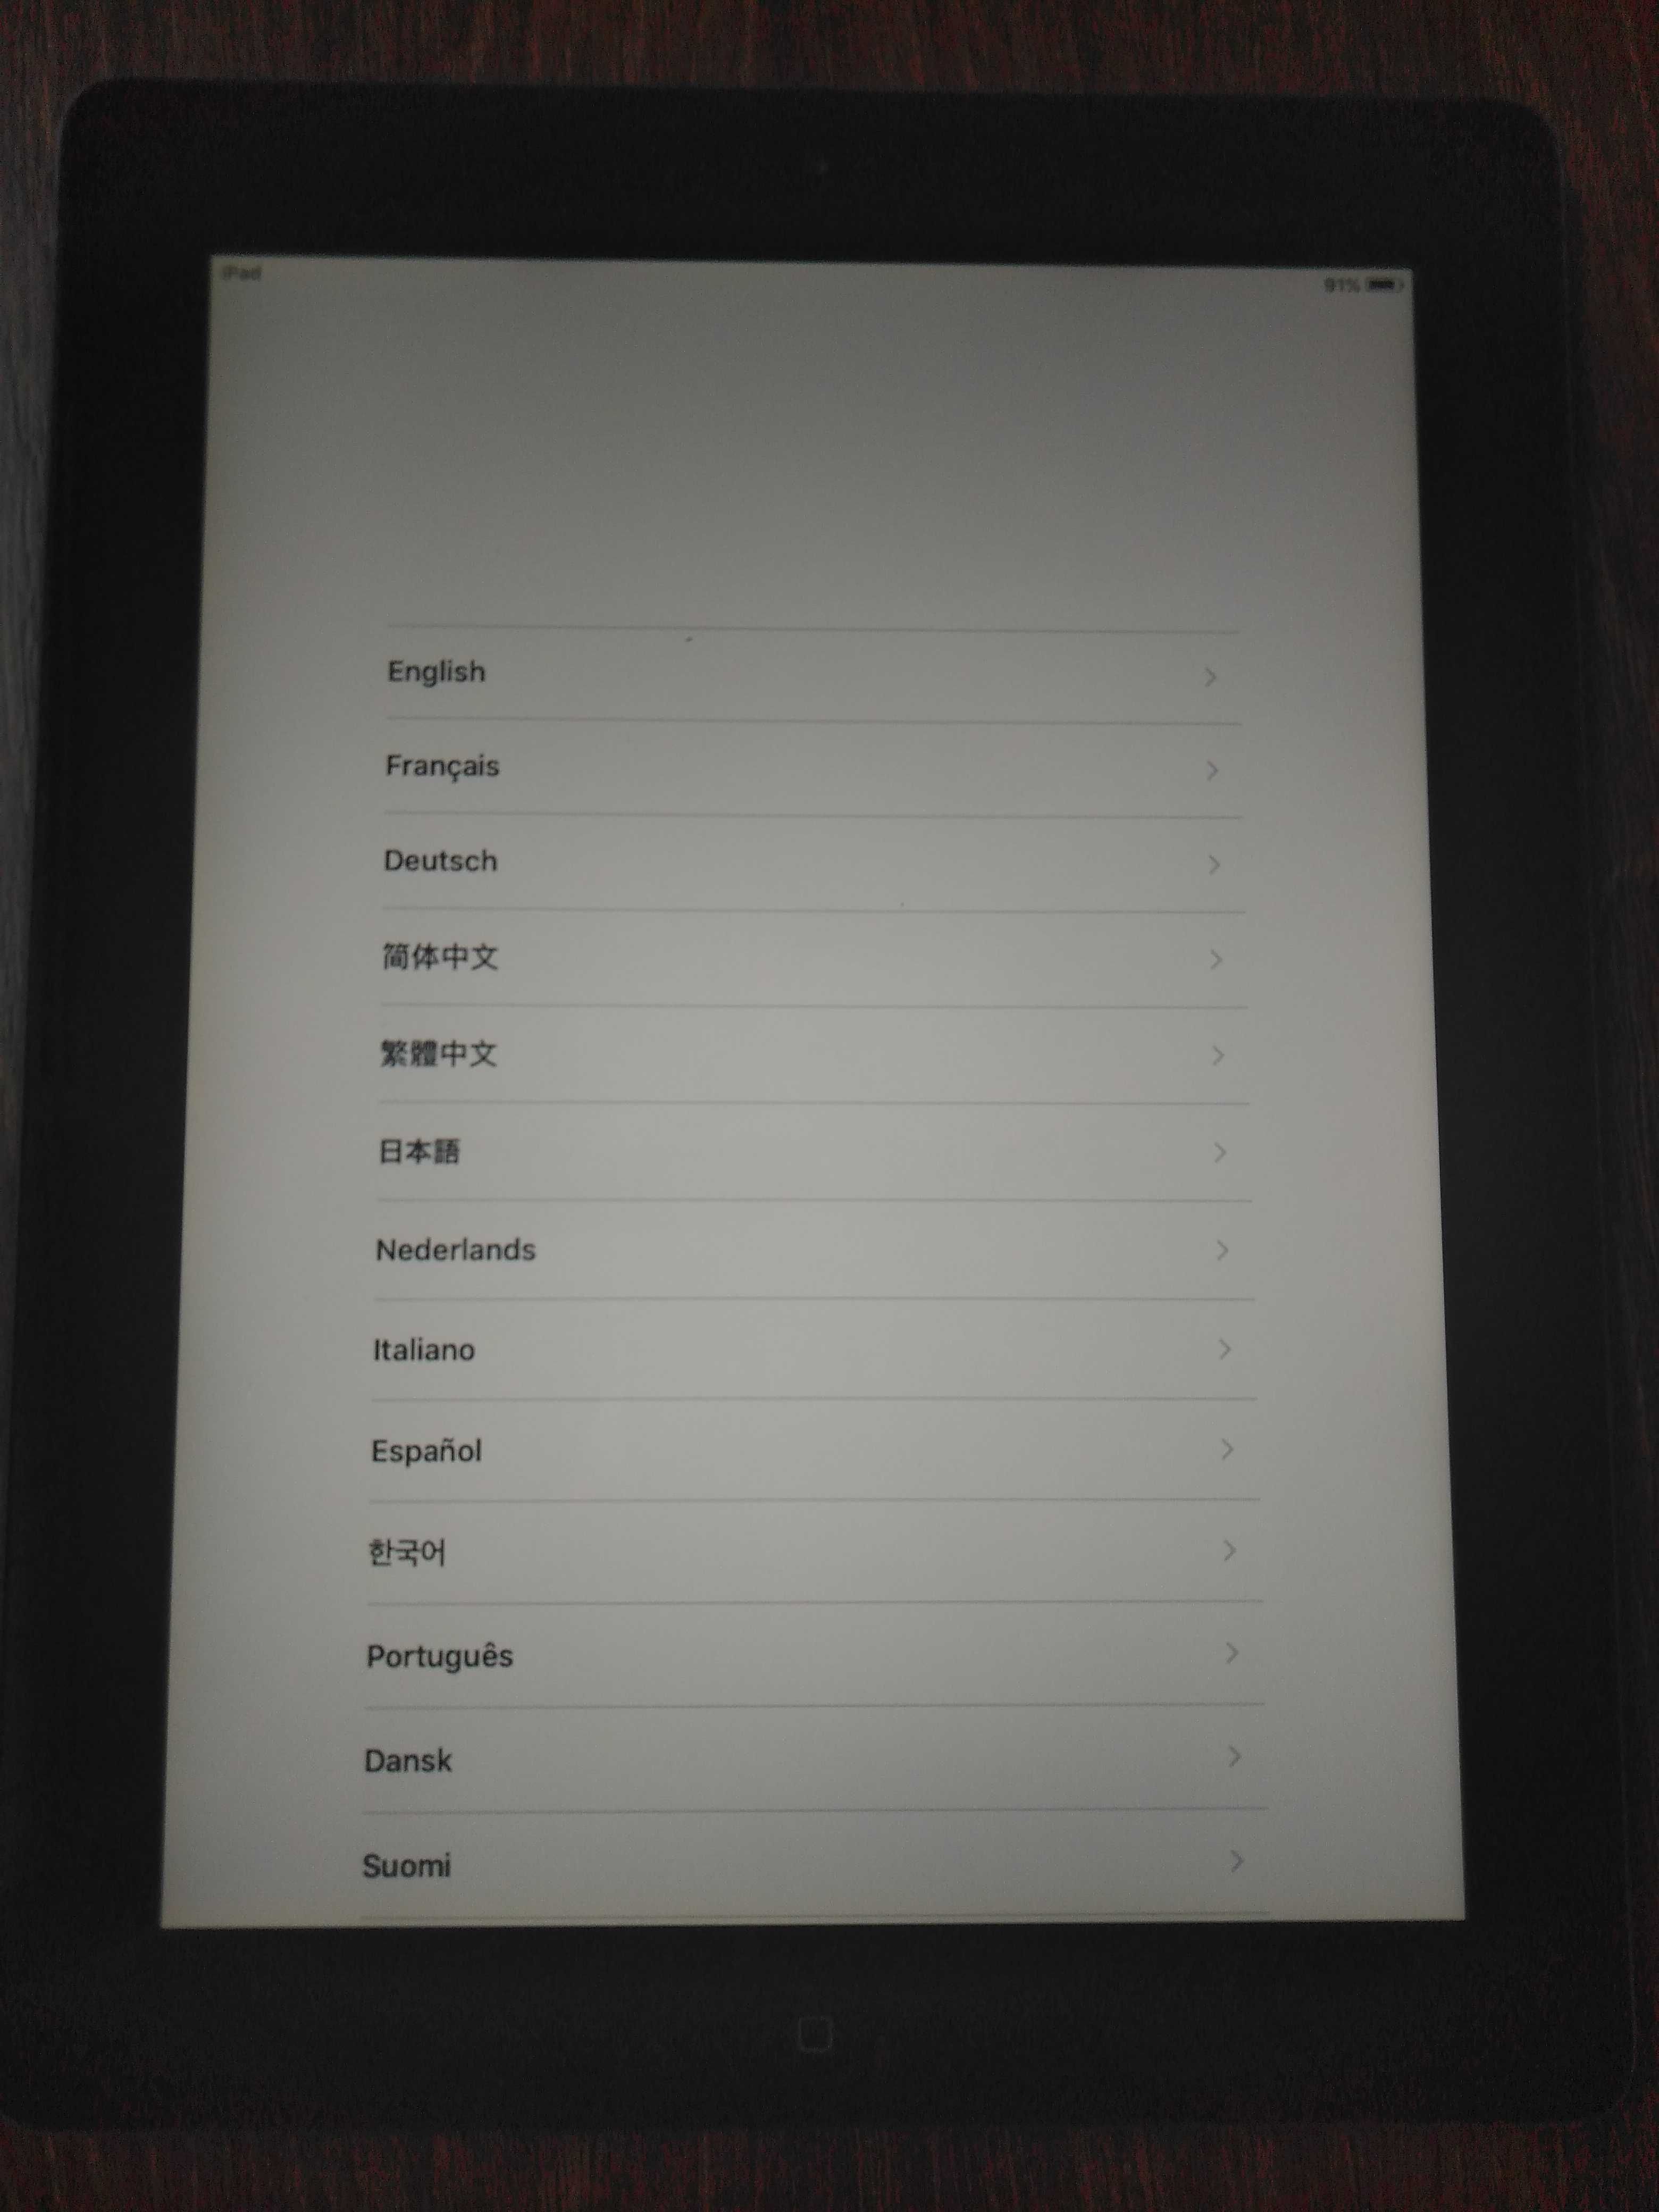 Apple iPad 2 Wi-Fi model A1395, 16GB  (3) pentru piese